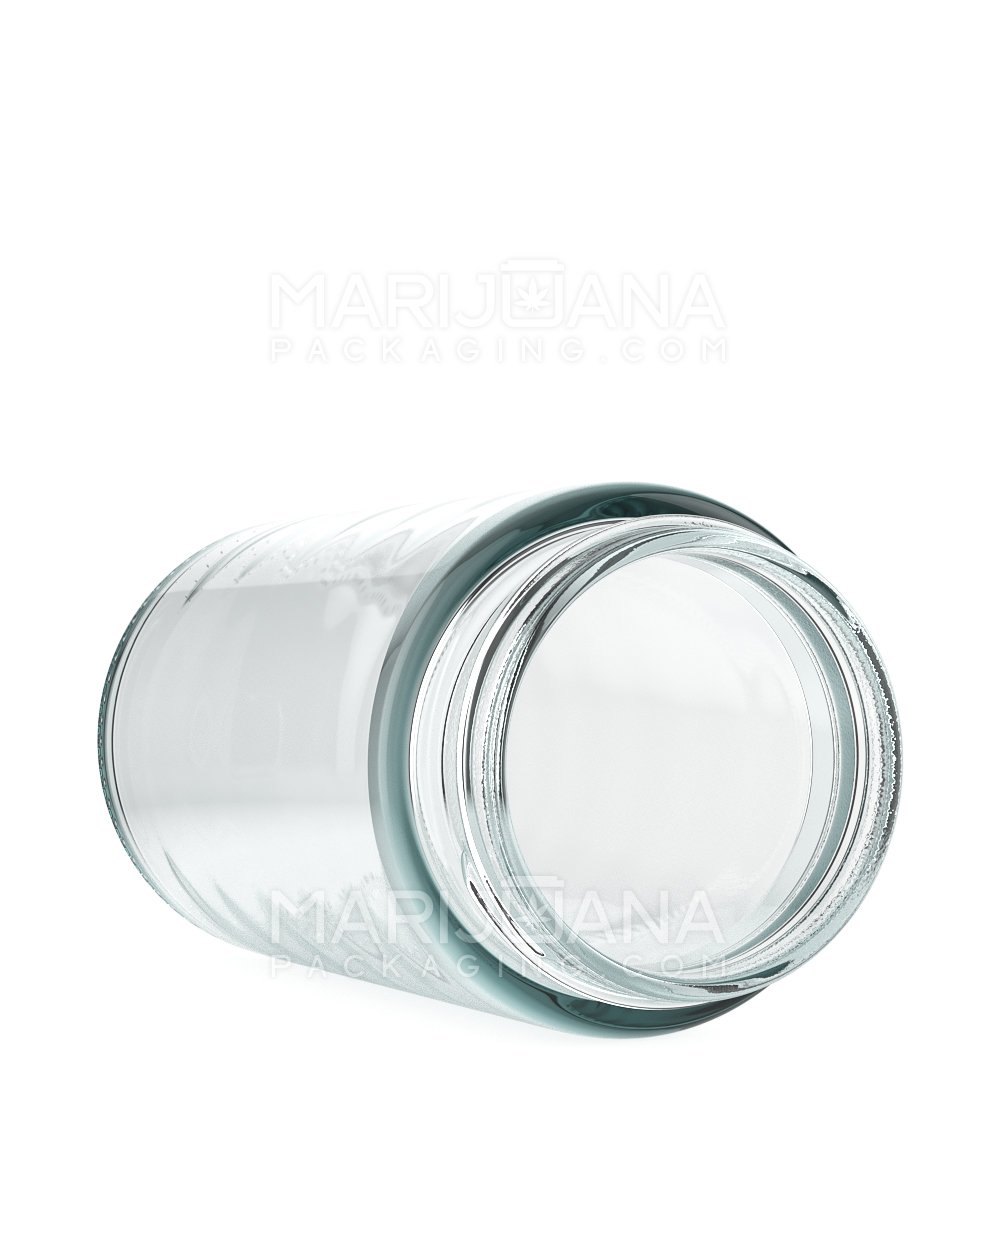 Clear Glass Jars, 6oz, Black Aluminum Foil Lined Caps, case/24